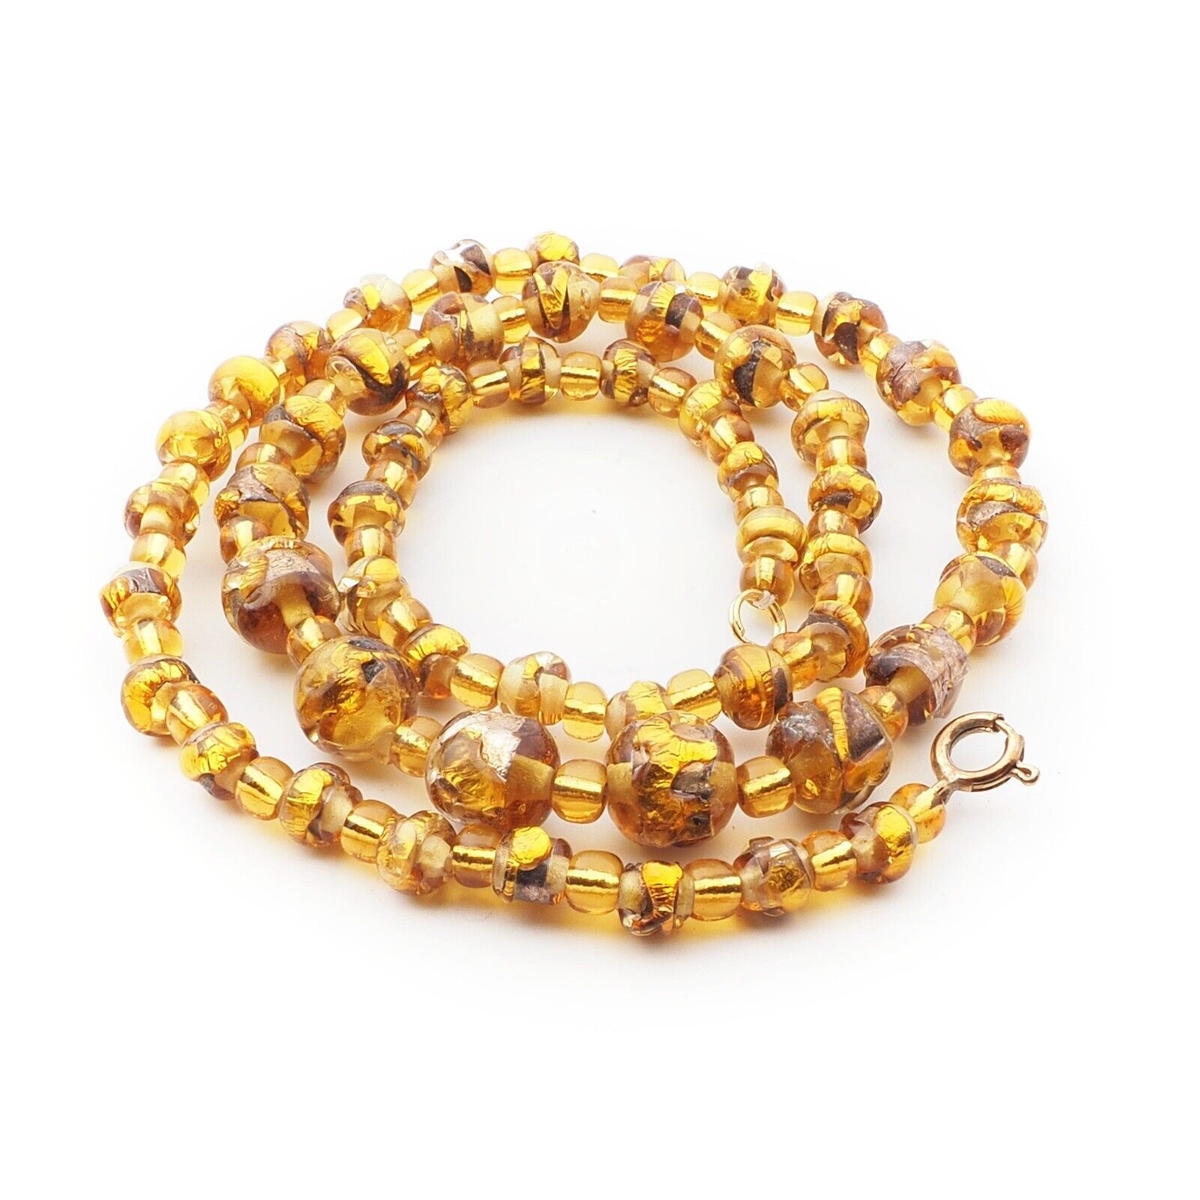 Vintage Czech necklace topaz foil overlay lampwork glass beads